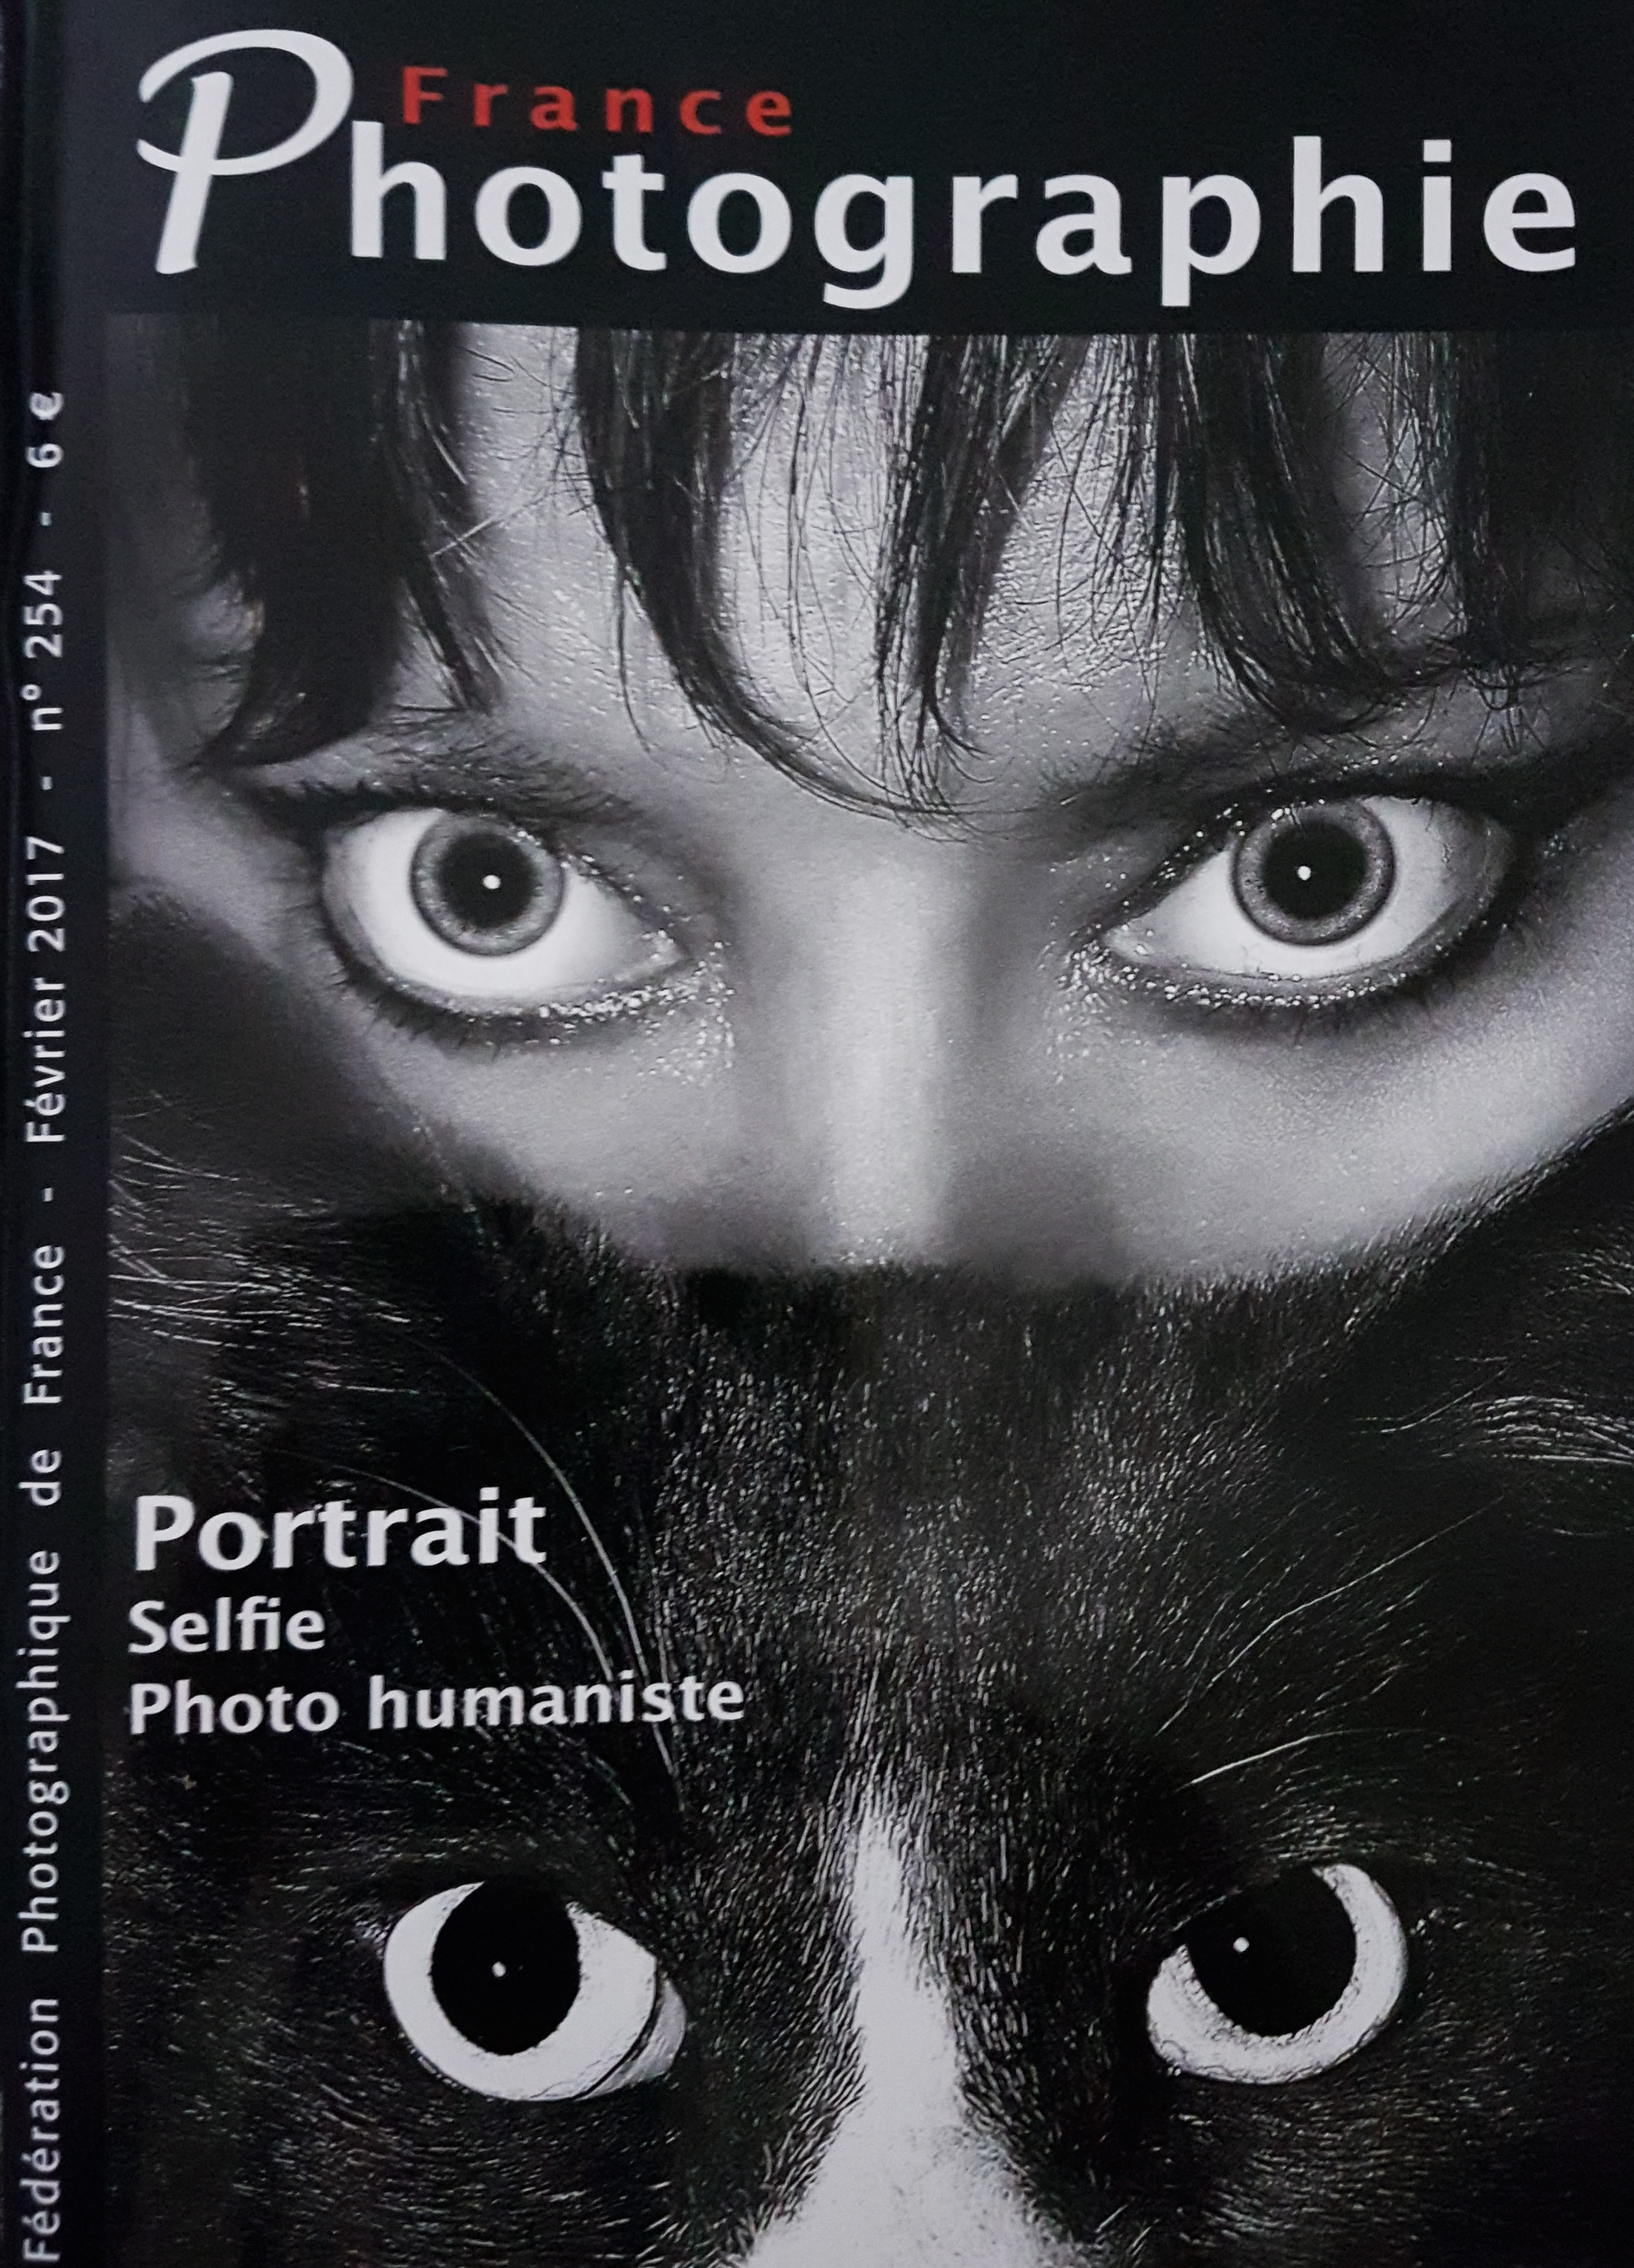 www.jessyseidlerphotography.com lauréate page auteur portrait autoportrait noir et blanc publication presse magazine